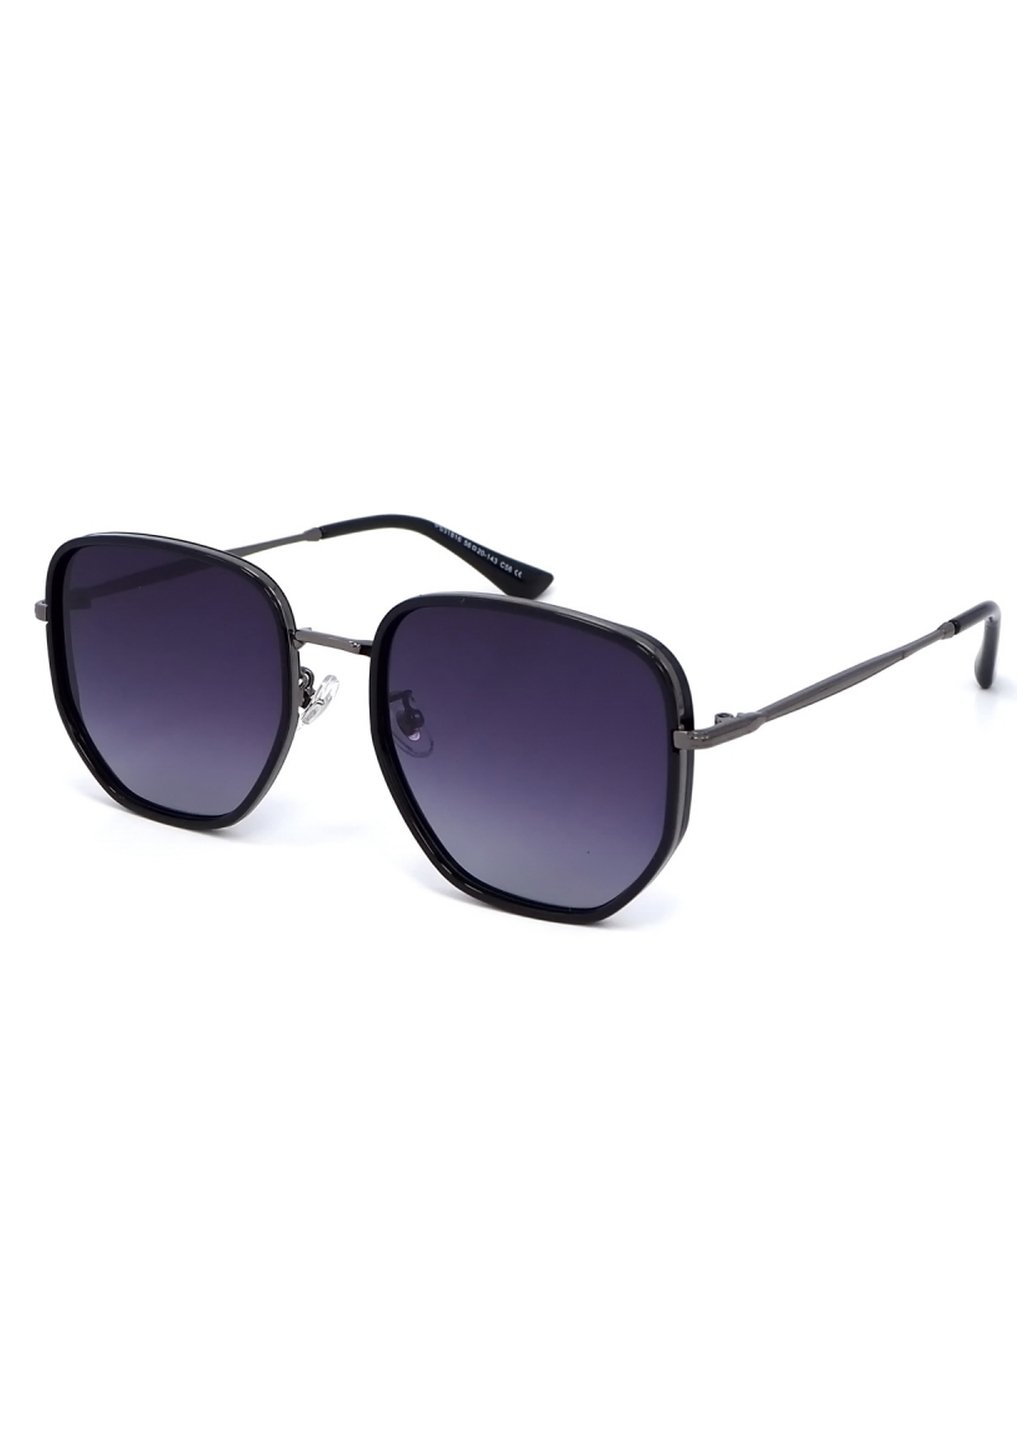 Купить Женские солнцезащитные очки Merlini с поляризацией S31816P 117039 - Черный в интернет-магазине